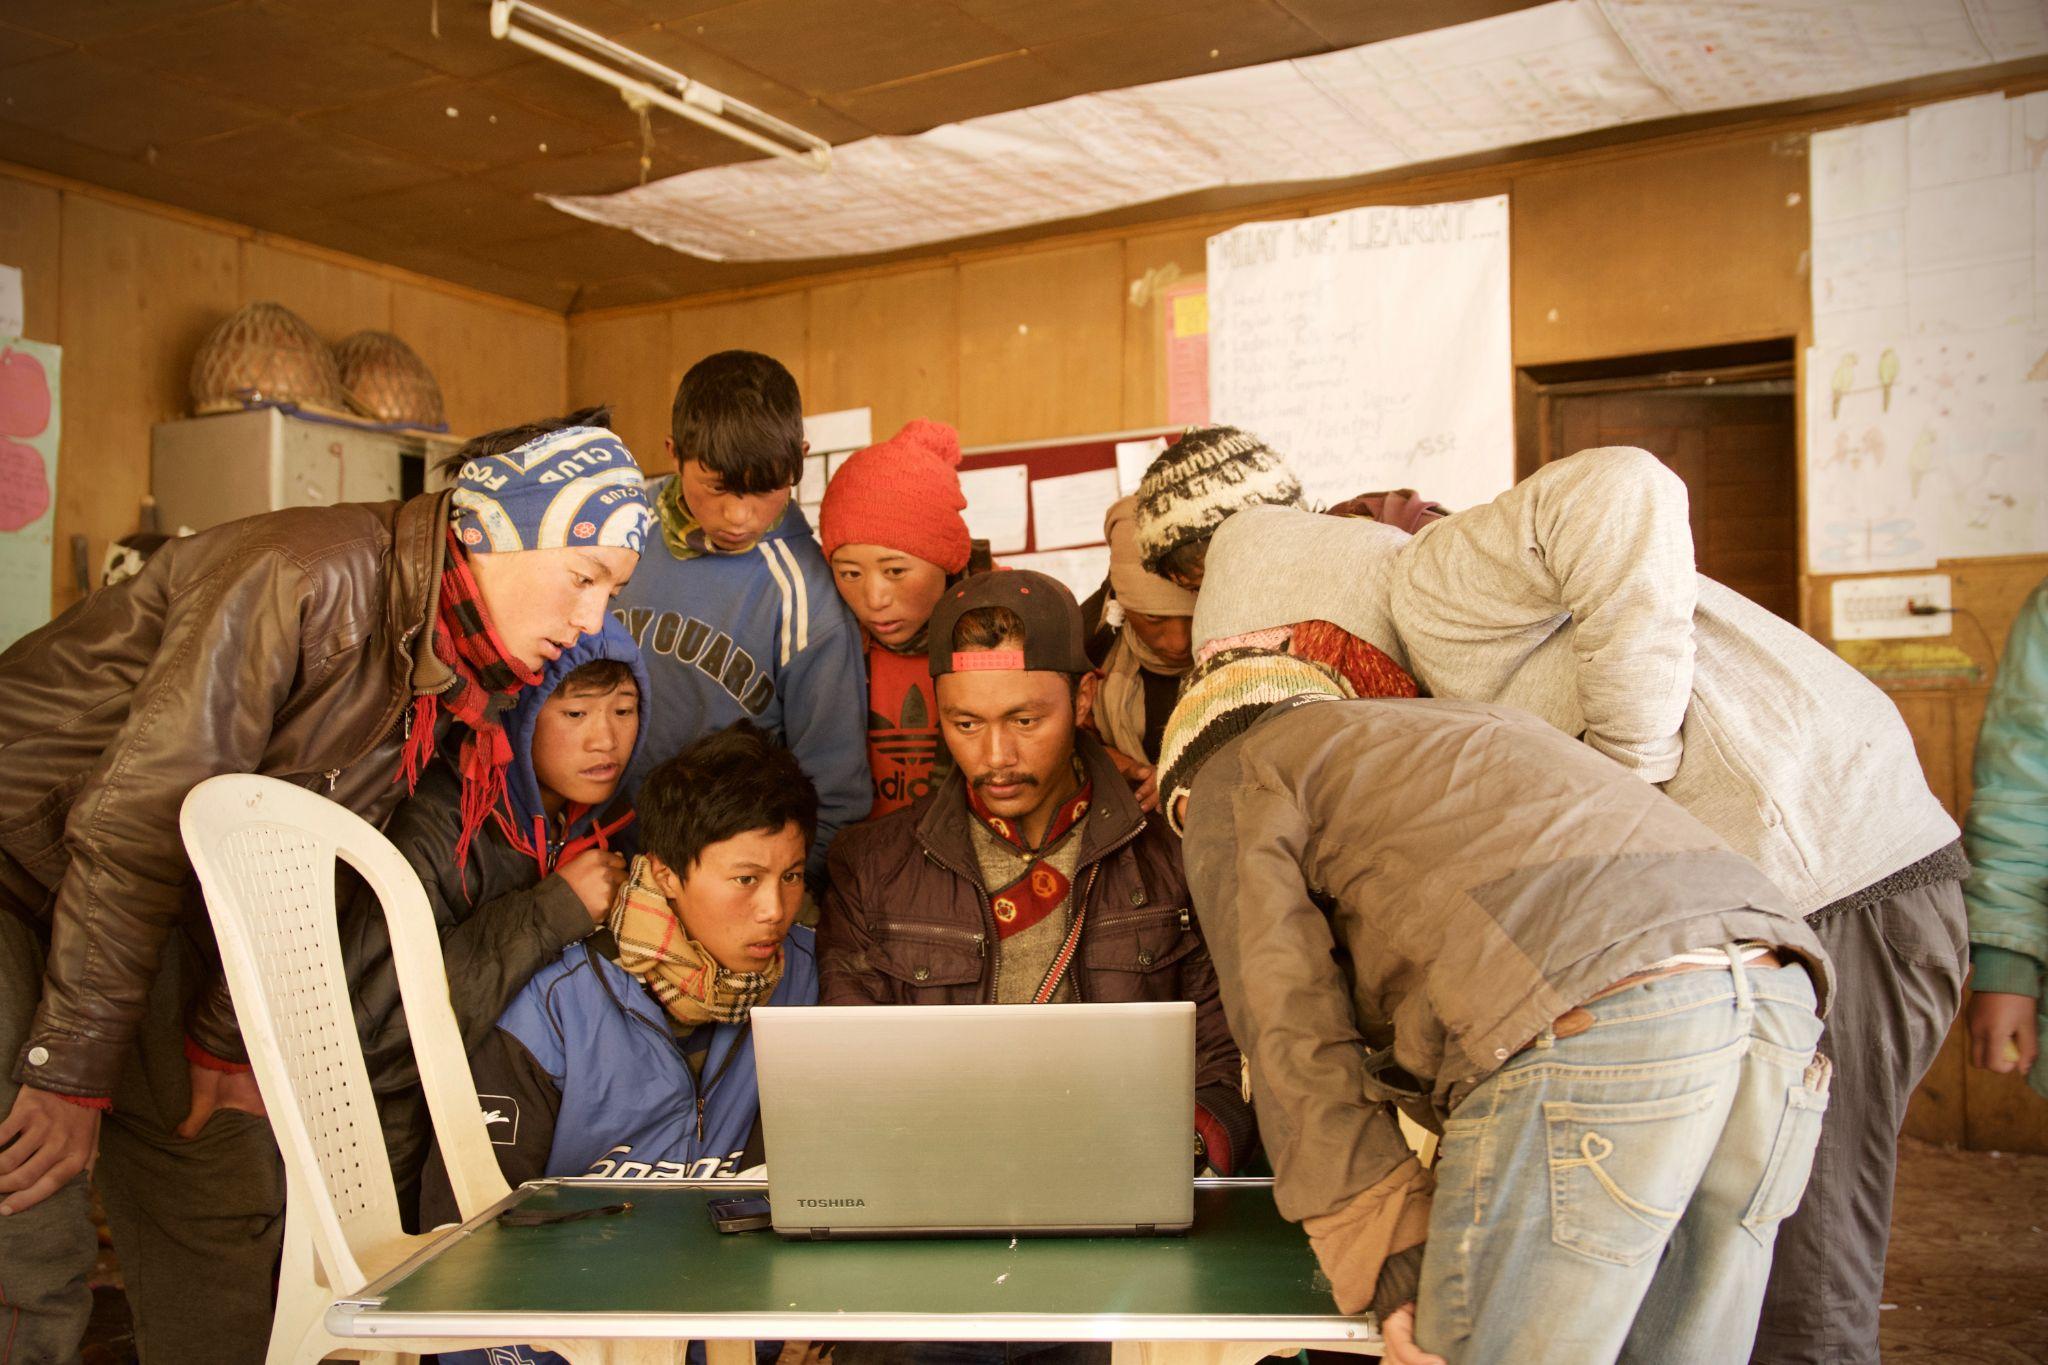 Personas reunidas alrededor de una laptop de pie sobre una mesa sencilla con una silla plástica a la izquierda. El fondo parece una escuela en un país en desarrollo.